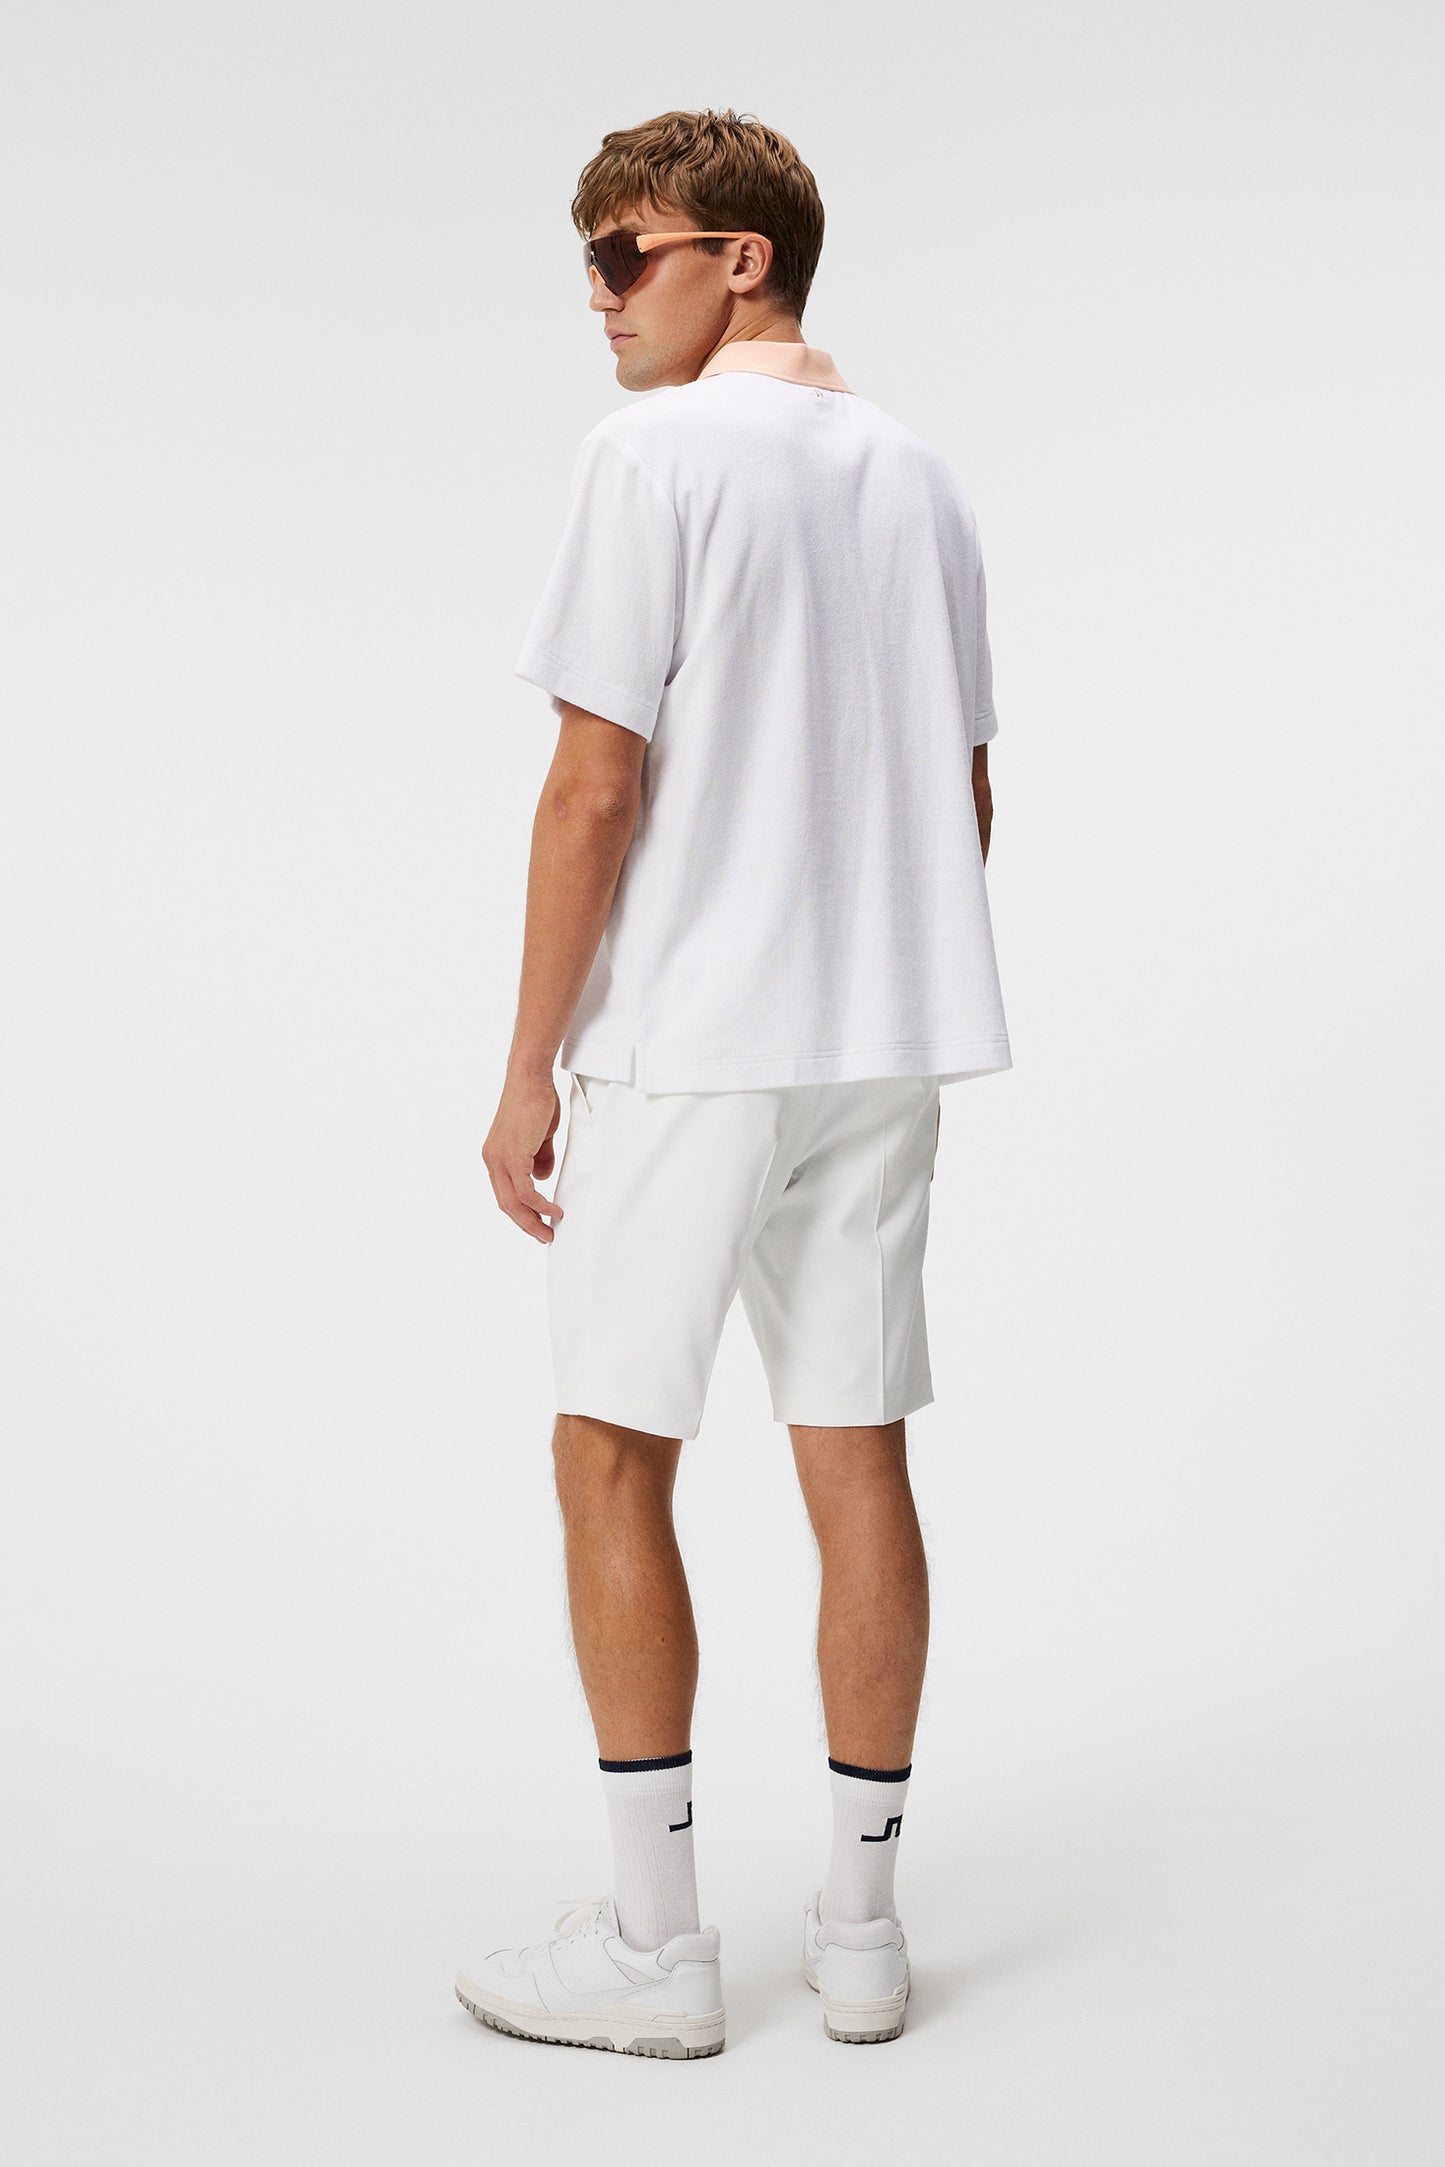 Gavin Terry Polo Shirt / White